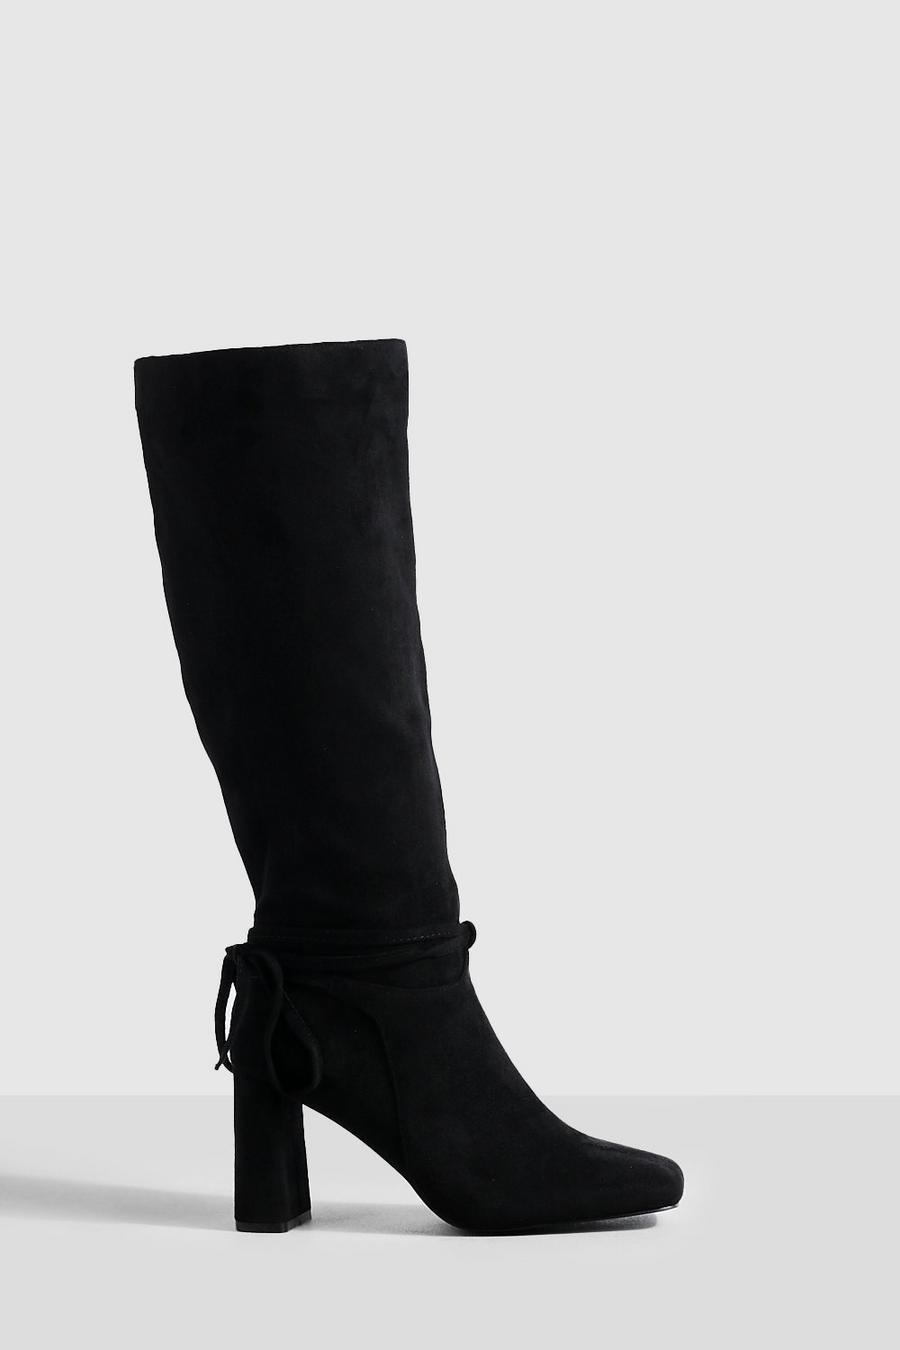 Breite Passform kniehohe Stiefel mit Blockabsatz und Schleifen-Detail, Black